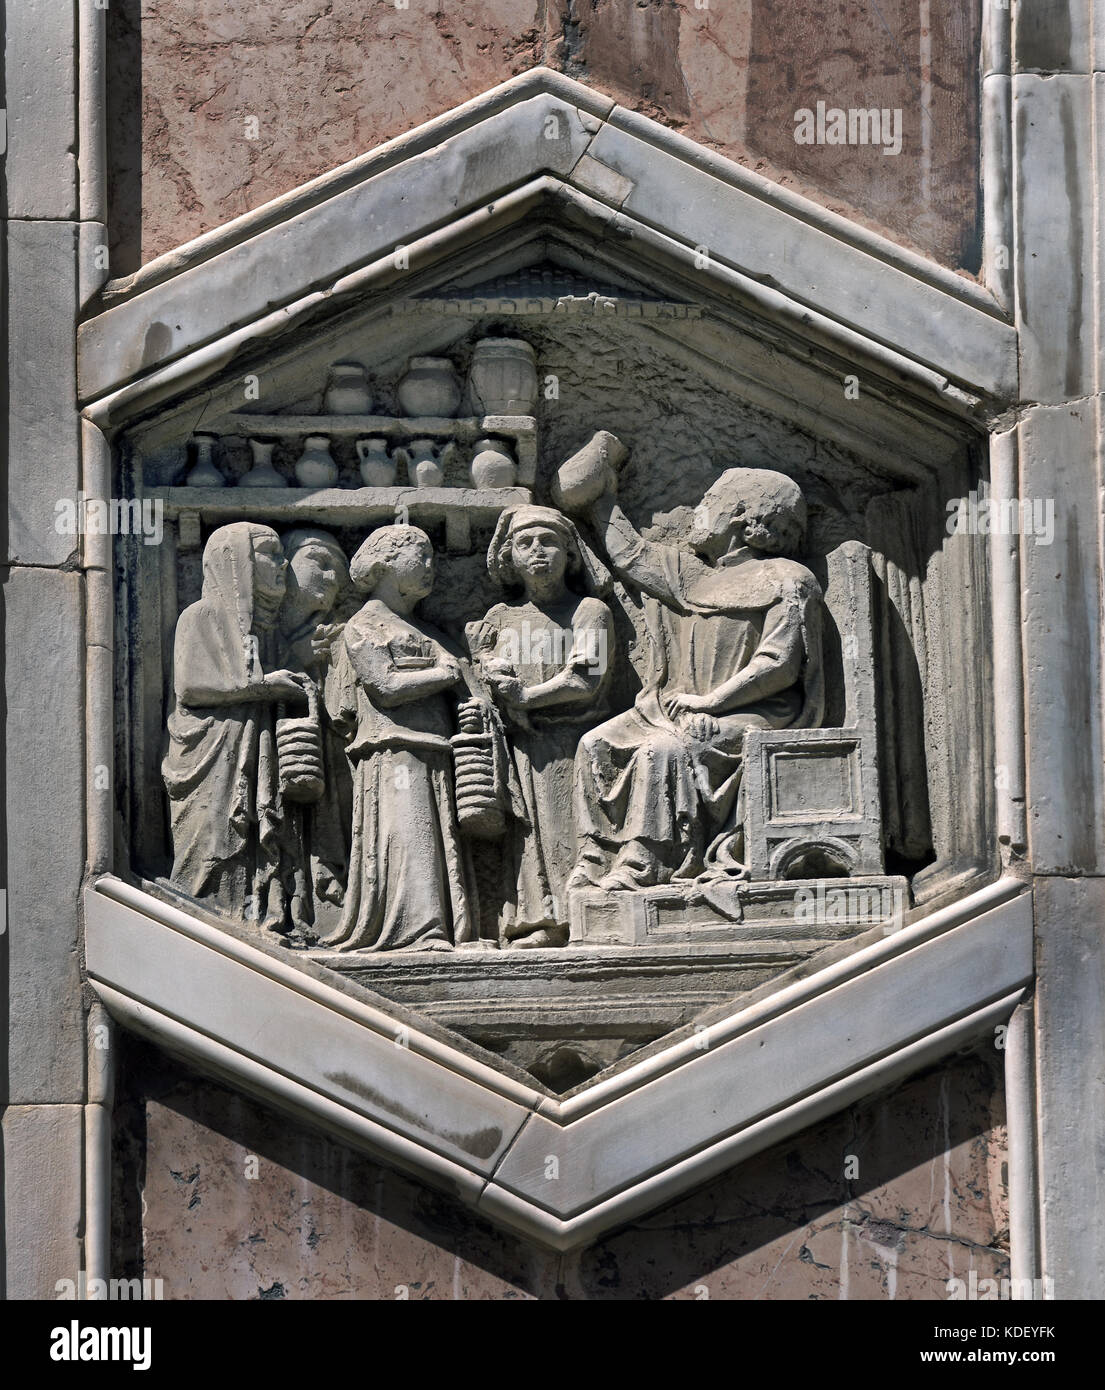 La médecine : Nino Pisano Pisano, 1334-36 1290 - 1348 est l'architecte et sculpteur atelier a commencé à propos de 1336 avec les reliefs de l'Hôtel Campanile la Cattedrale di Santa Maria del Fiore de Florence - Florence Italie Cathédrale de Sainte Marie de la fleur 1336 Florence Italie Banque D'Images